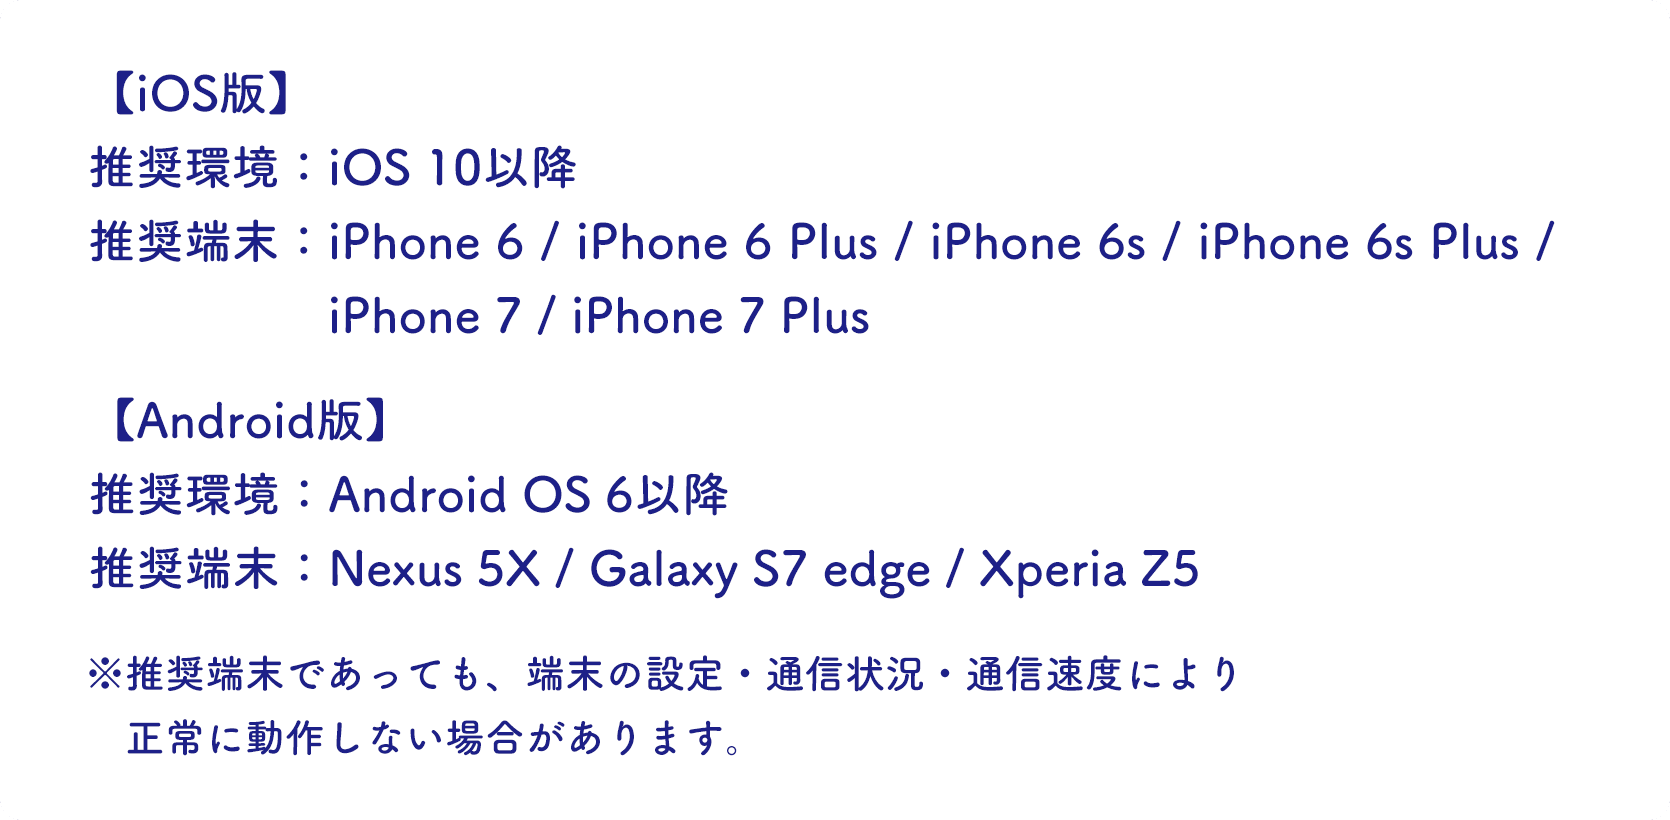 推奨環境：iOS10以降(iPhone6/6 Plus/6s/6s Plus/7/7 Plus)、Android OS 6以降(Nexus 5X/Galaxy S7 edge/Xperia Z5)※推奨端末であっても、端末の設定・通信状況・通信速度により、正常に動作しない場合があります。